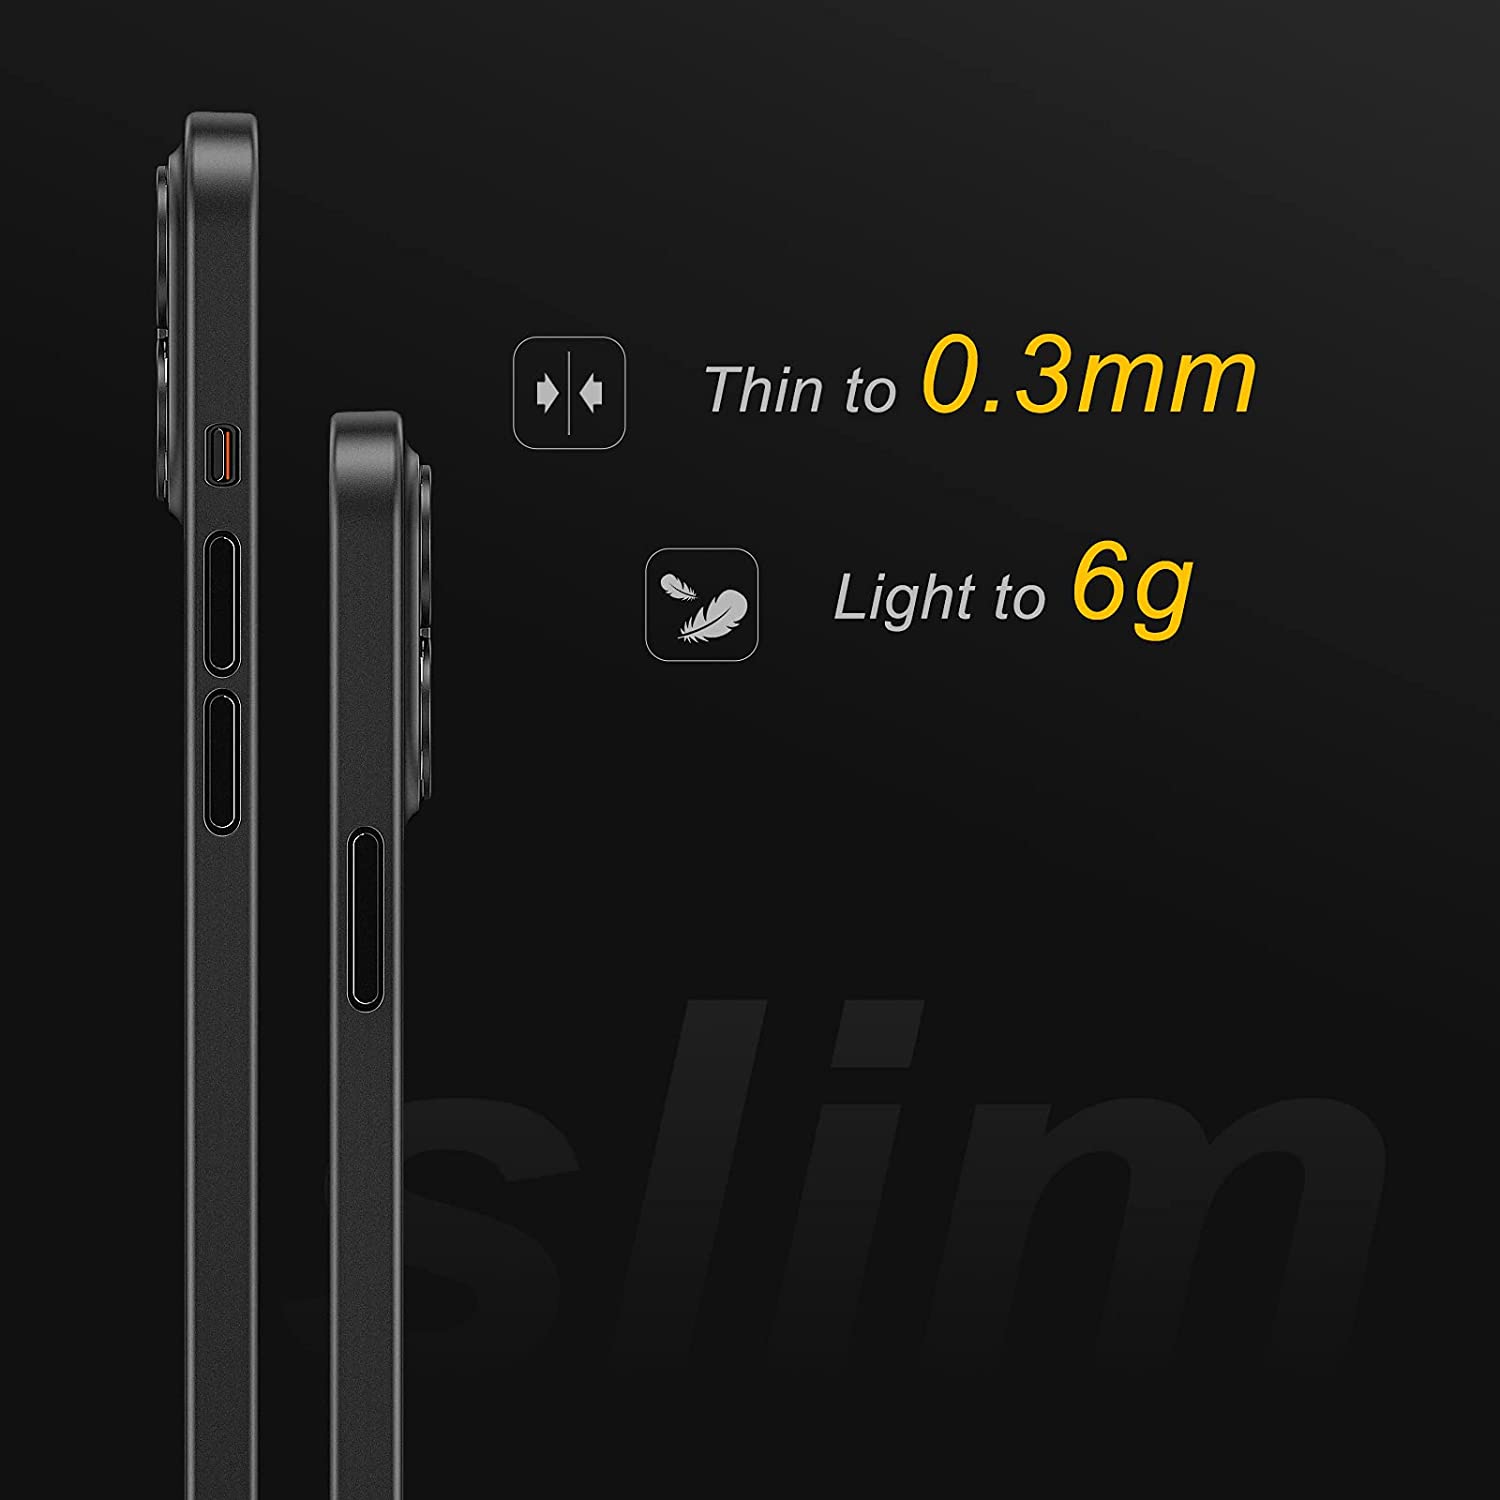 Ốp lưng chống sốc siêu mỏng 0.3mm cho iPhone 13 Pro Max hiệu Memumi mặt lưng nhám mềm mịn thời trang tinh tế - hàng nhập khẩu